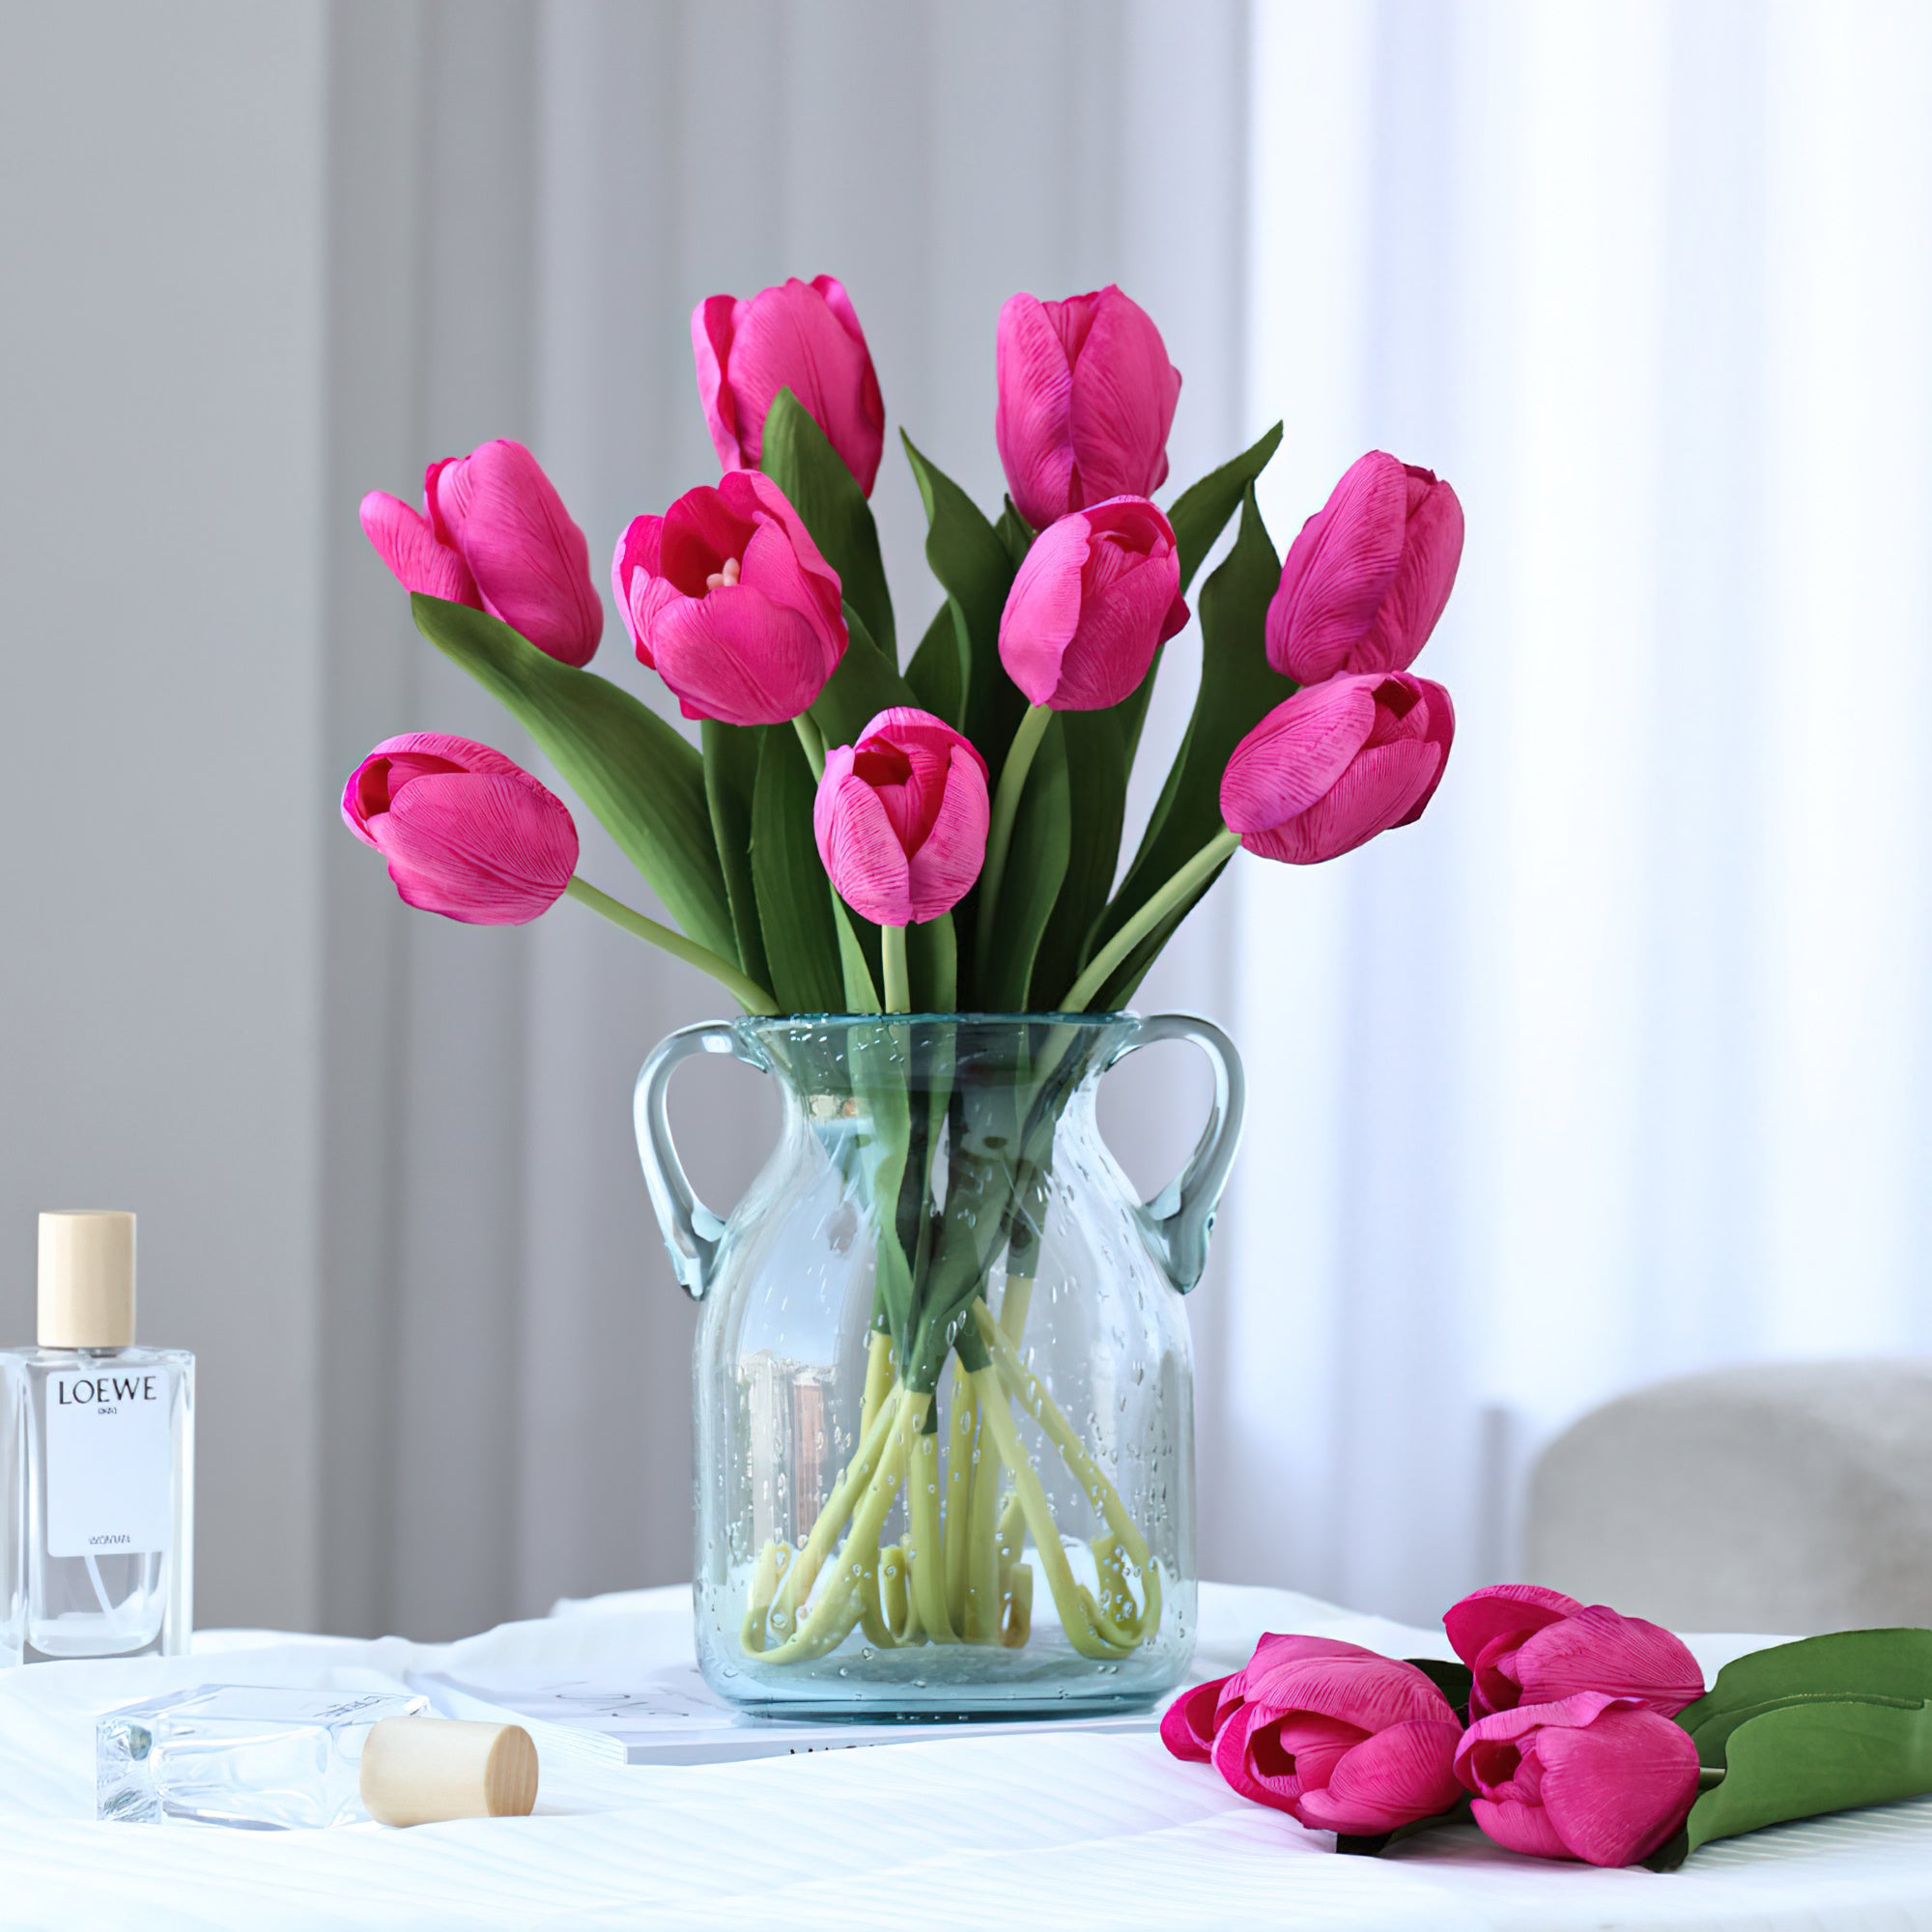 Tulipes en soie réalistes au toucher riche en humidité – Bouquet floral multicolore réaliste pour décoration sensorielle de la maison